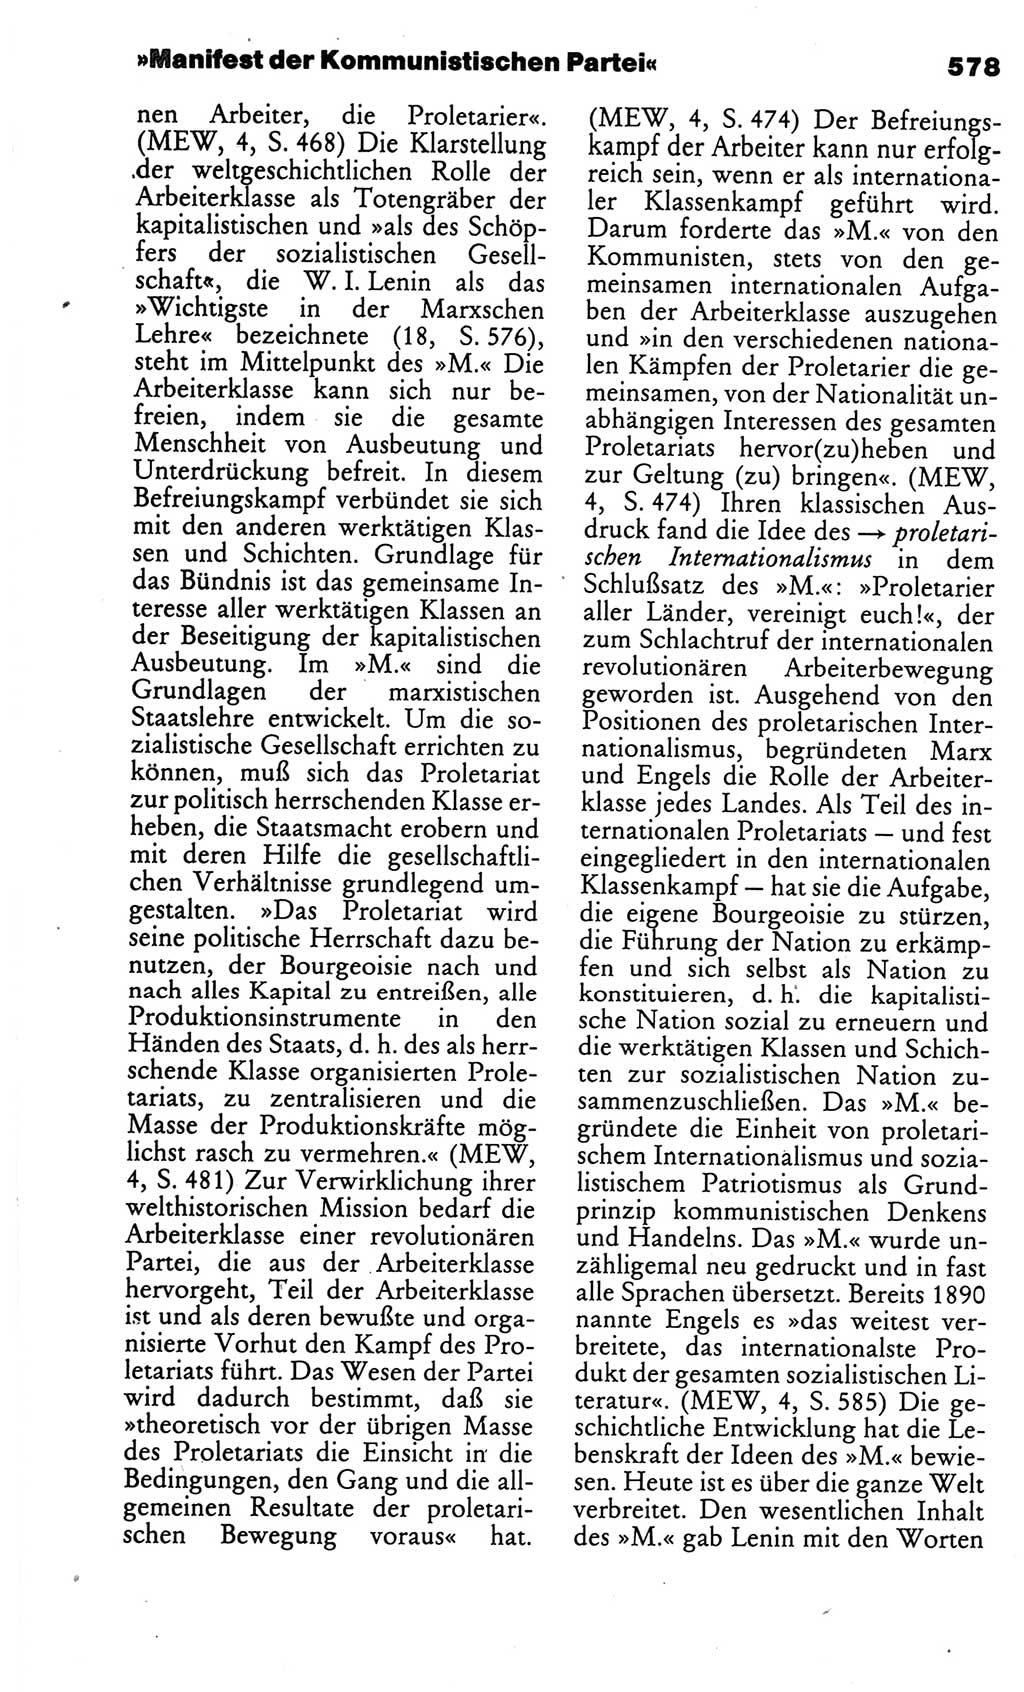 Kleines politisches Wörterbuch [Deutsche Demokratische Republik (DDR)] 1986, Seite 578 (Kl. pol. Wb. DDR 1986, S. 578)